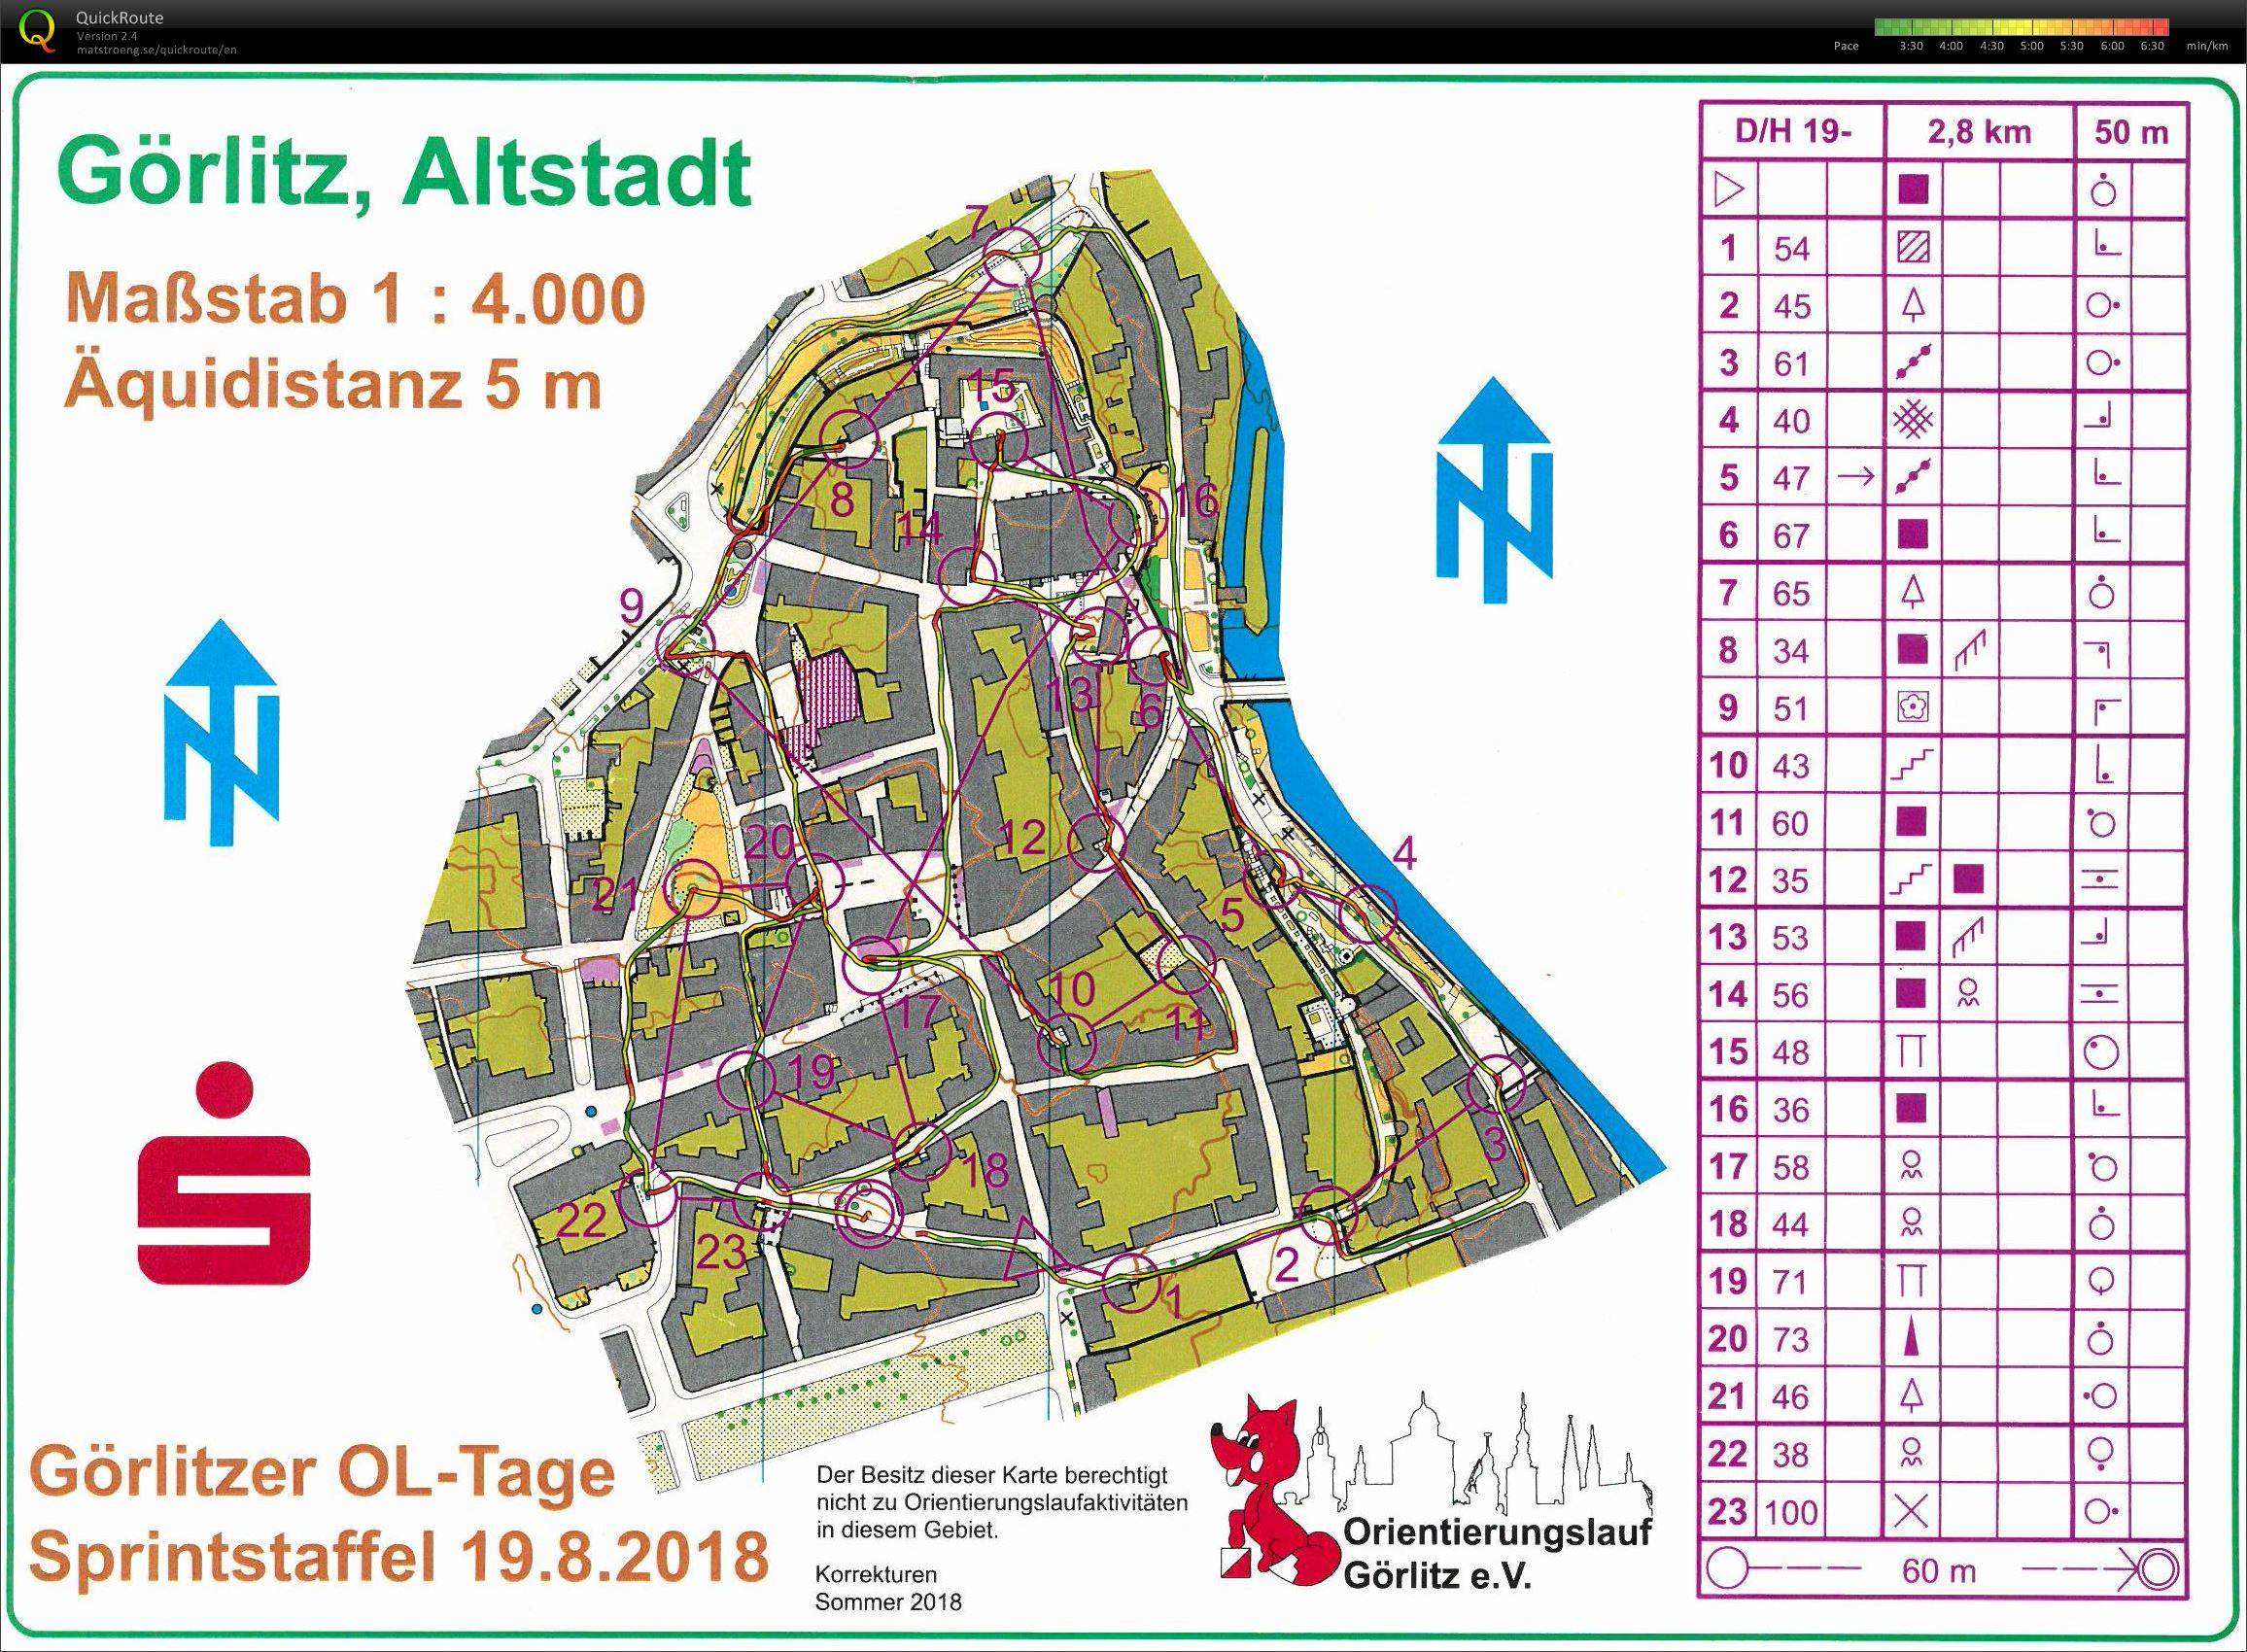 Mixed-Sprintstaffel in der Altstadt Görlitz (19.08.2018)